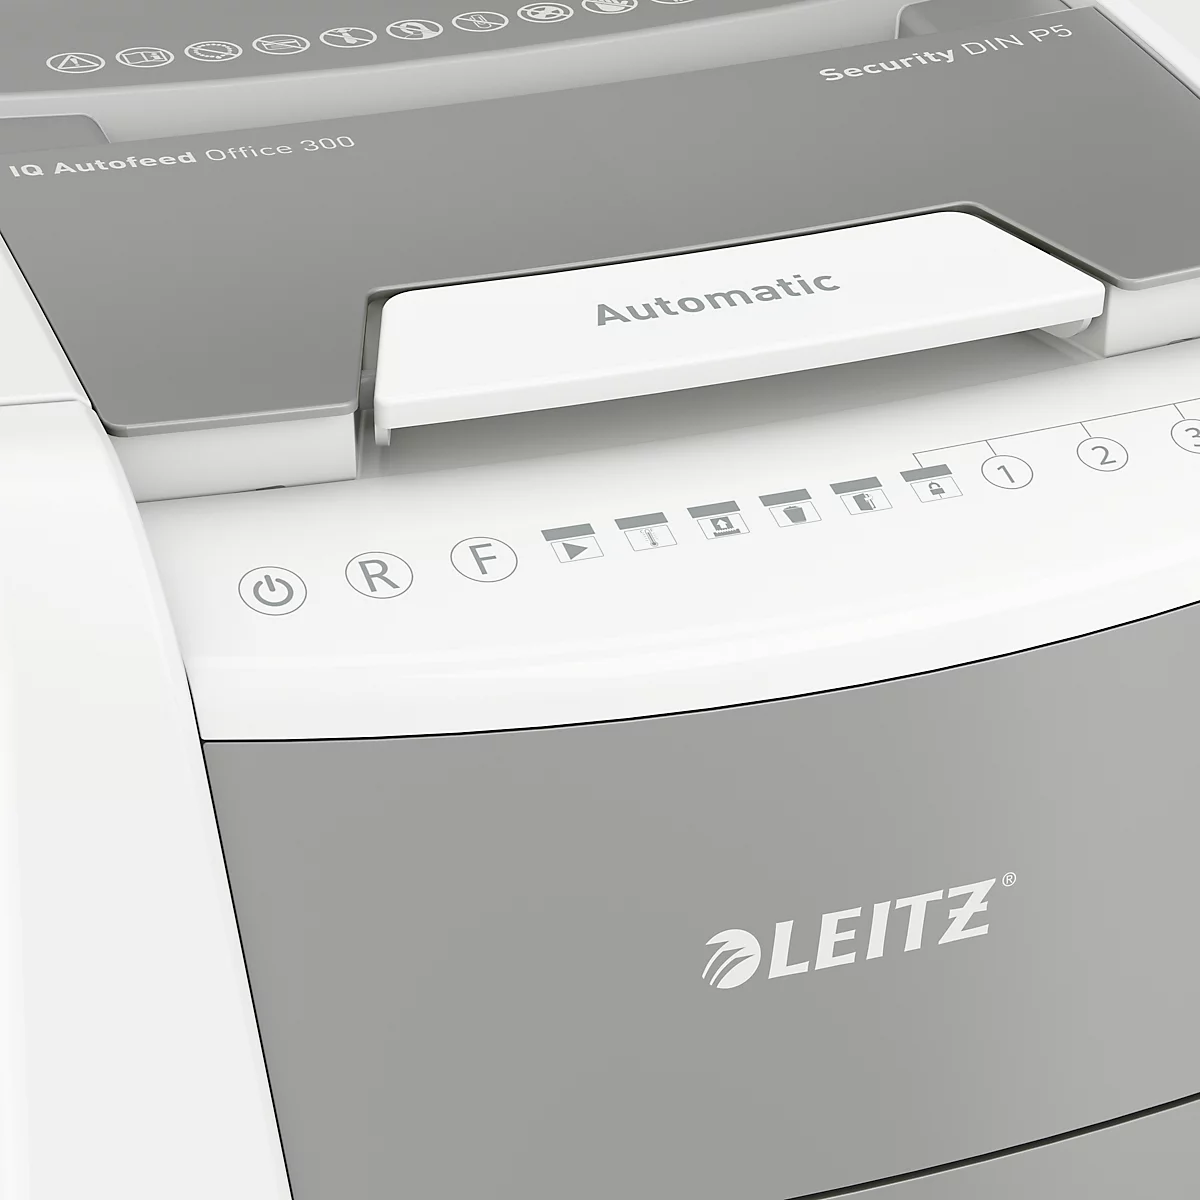 Leitz IQ Autofeed Office 300 Aktenvernichter P5, Vollautomatik, Mikroschnitt 2 x 15 mm, 60 l, 300 Blatt Schnittleistung, mit Rollen, weiß